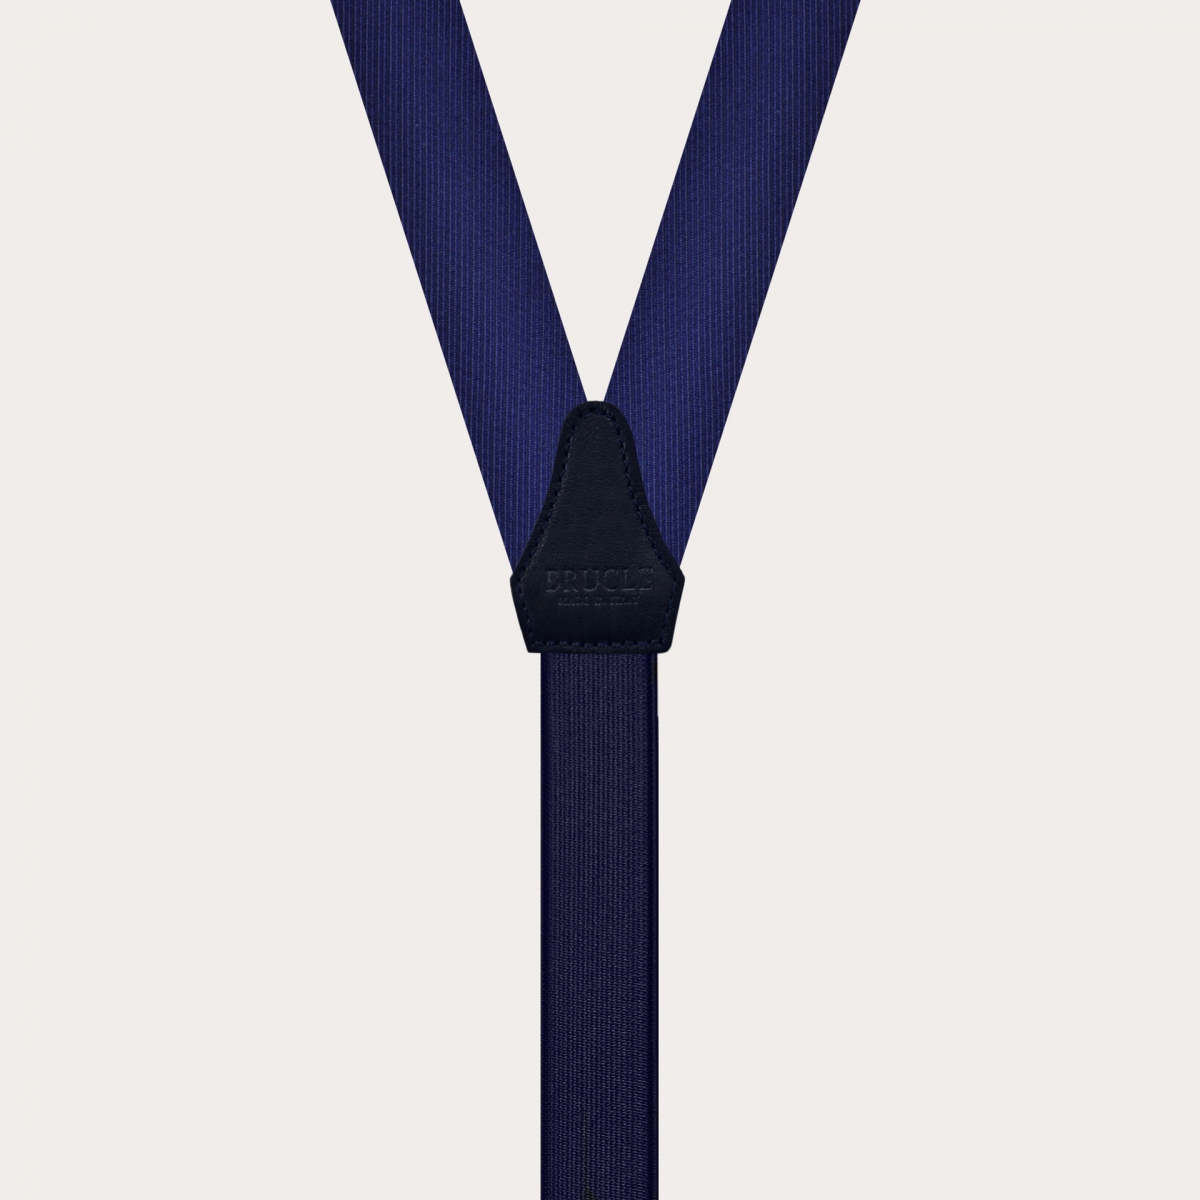 Tirantes en forma de Y en seda, navy blue